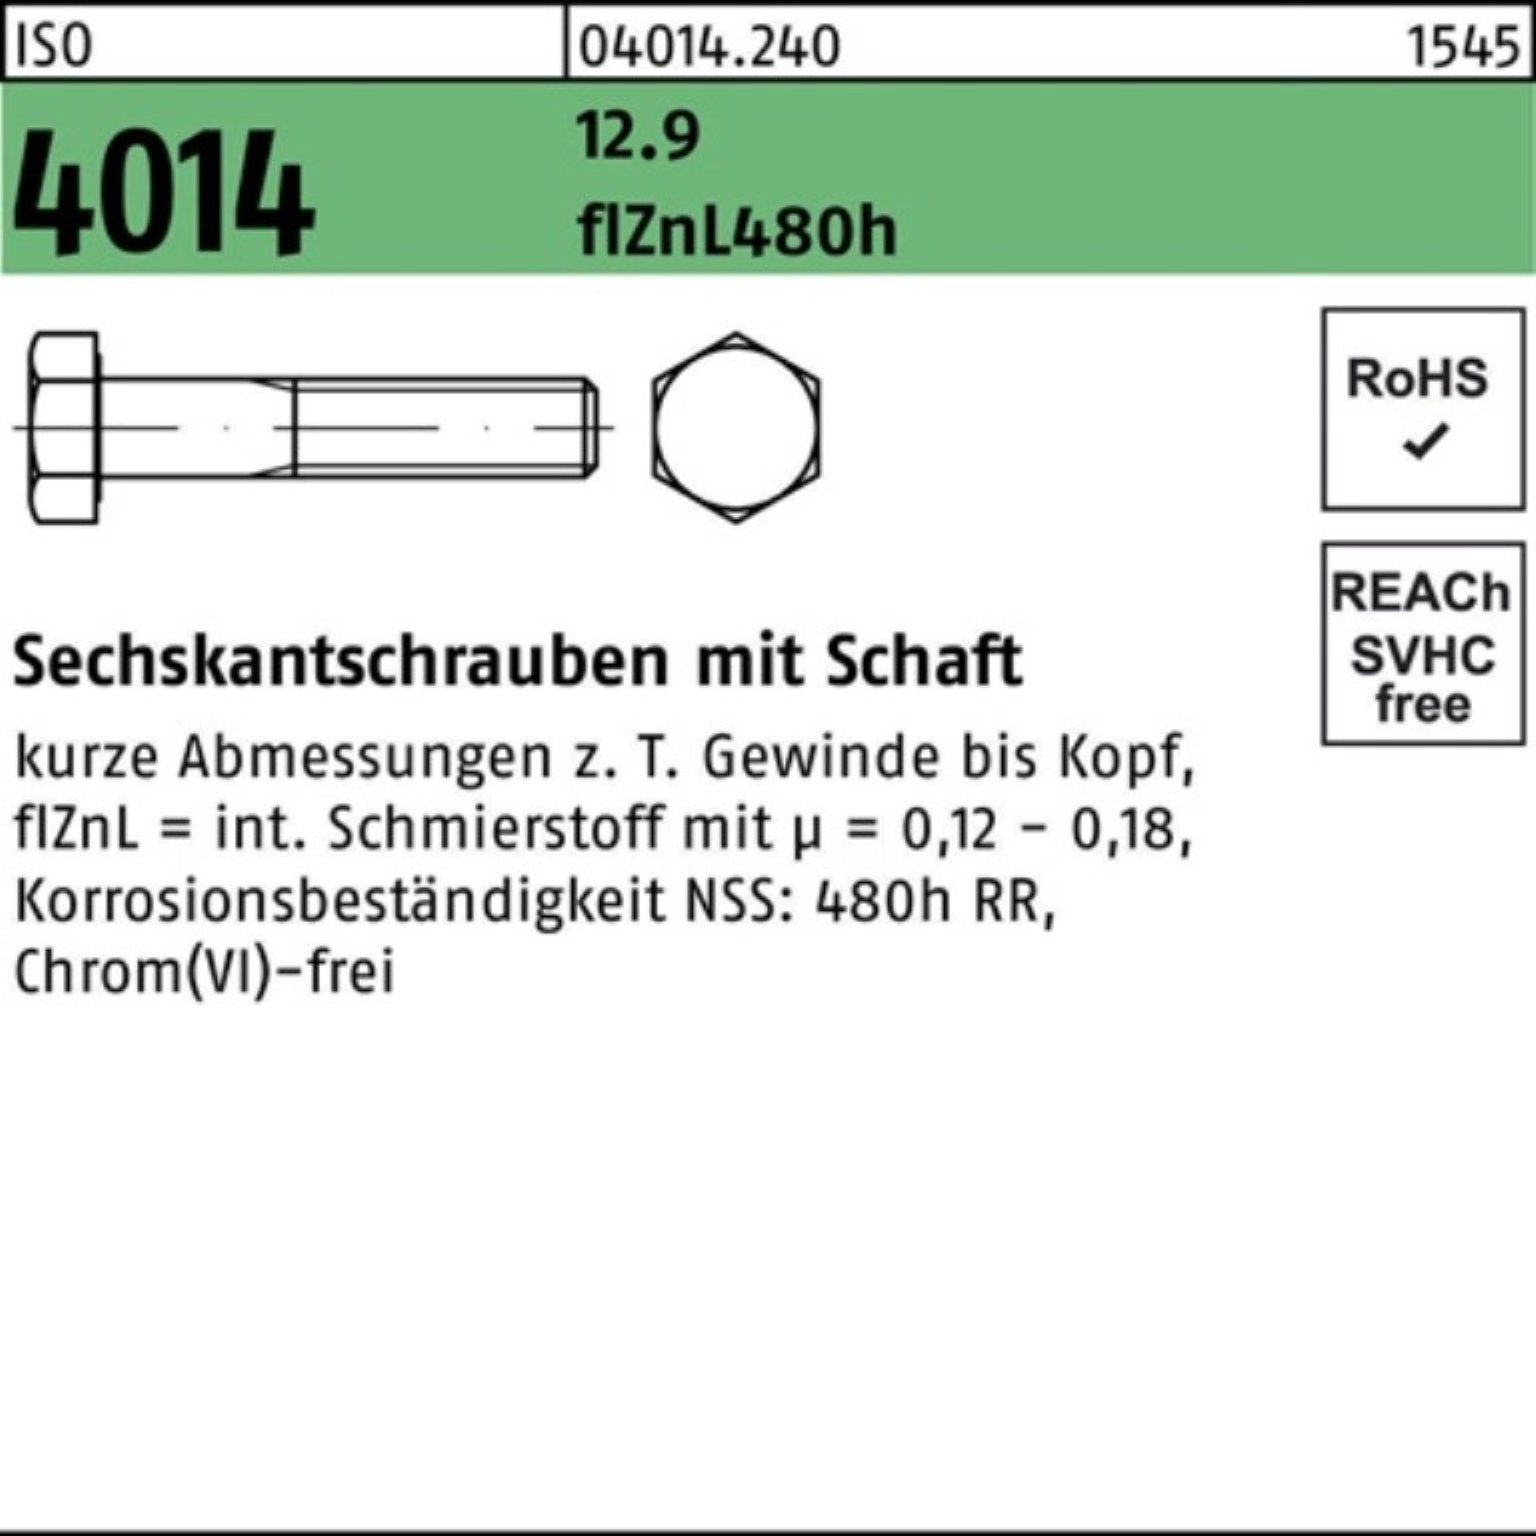 Reyher Sechskantschraube 100er Pack Sechskantschraube 4014 480h M20x65 ISO Schaft flZnL 12.9 zi